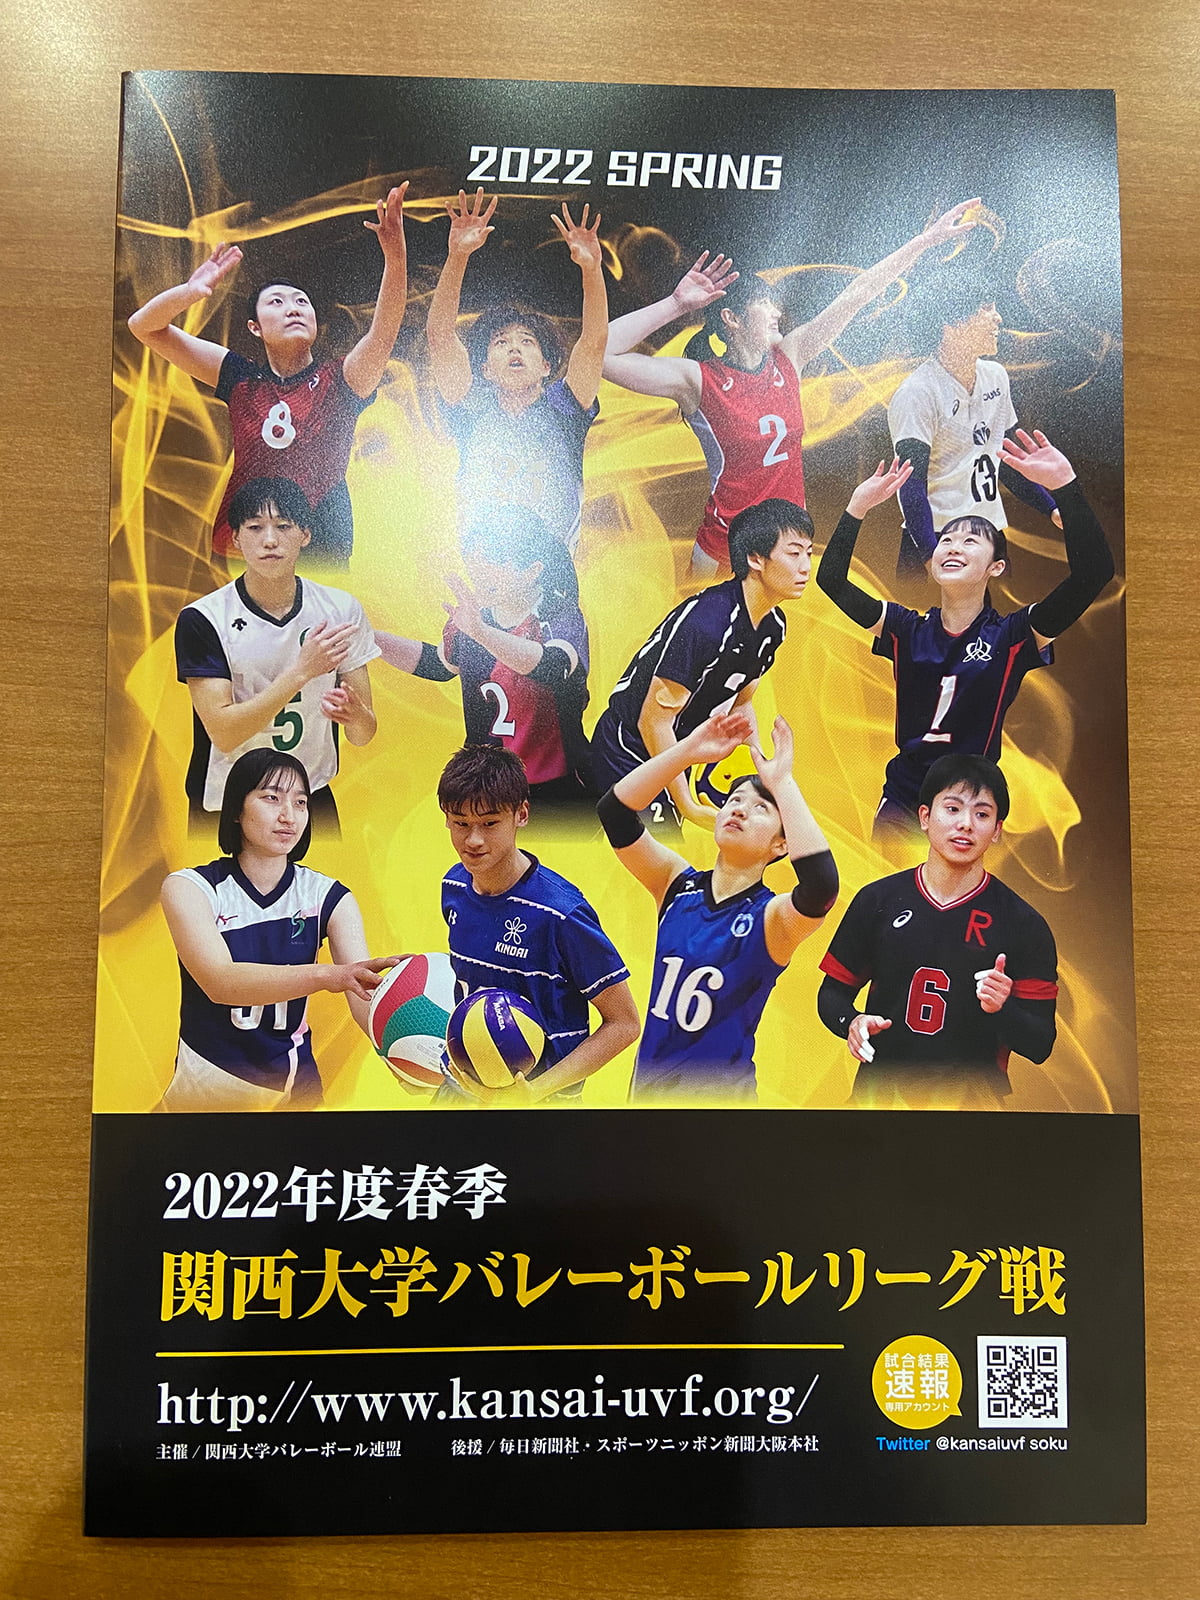 2022年度春季関西大学バレーボールリーグ戦